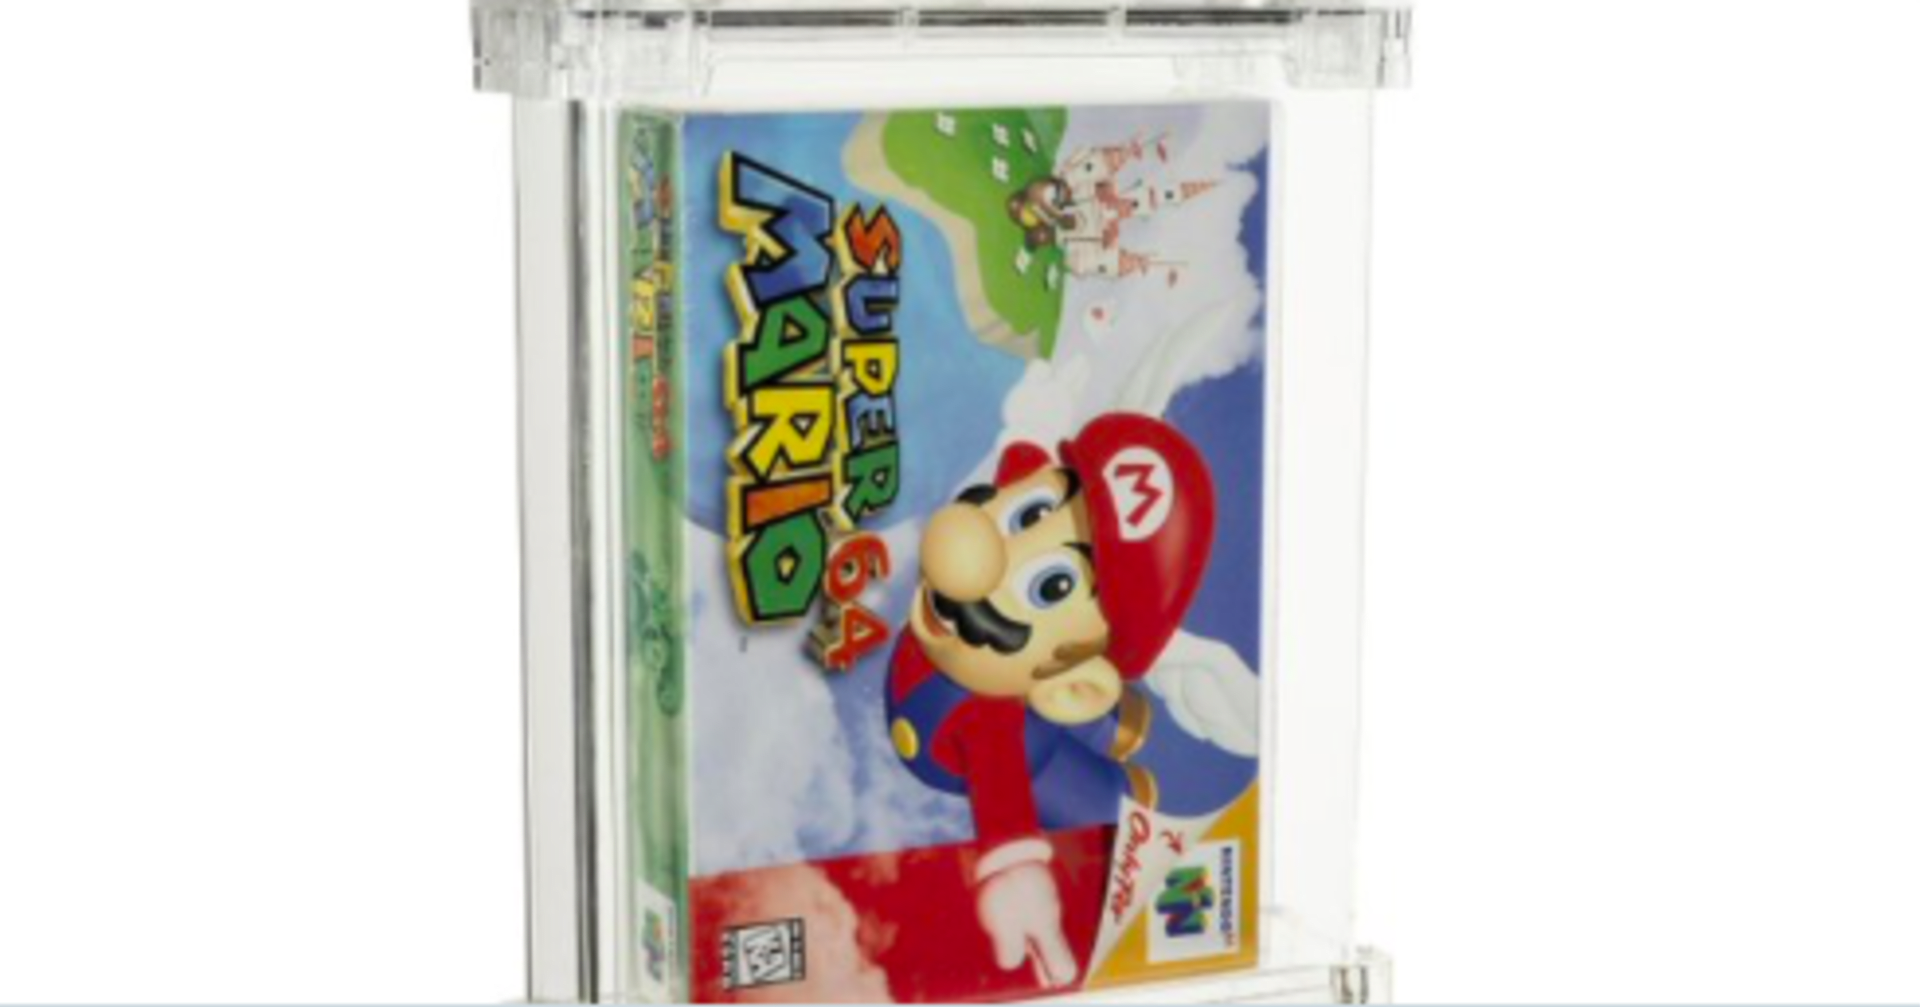 Rekordní aukce. Nerozbalená videohra Super Mario se vydražila za desítky milionů.